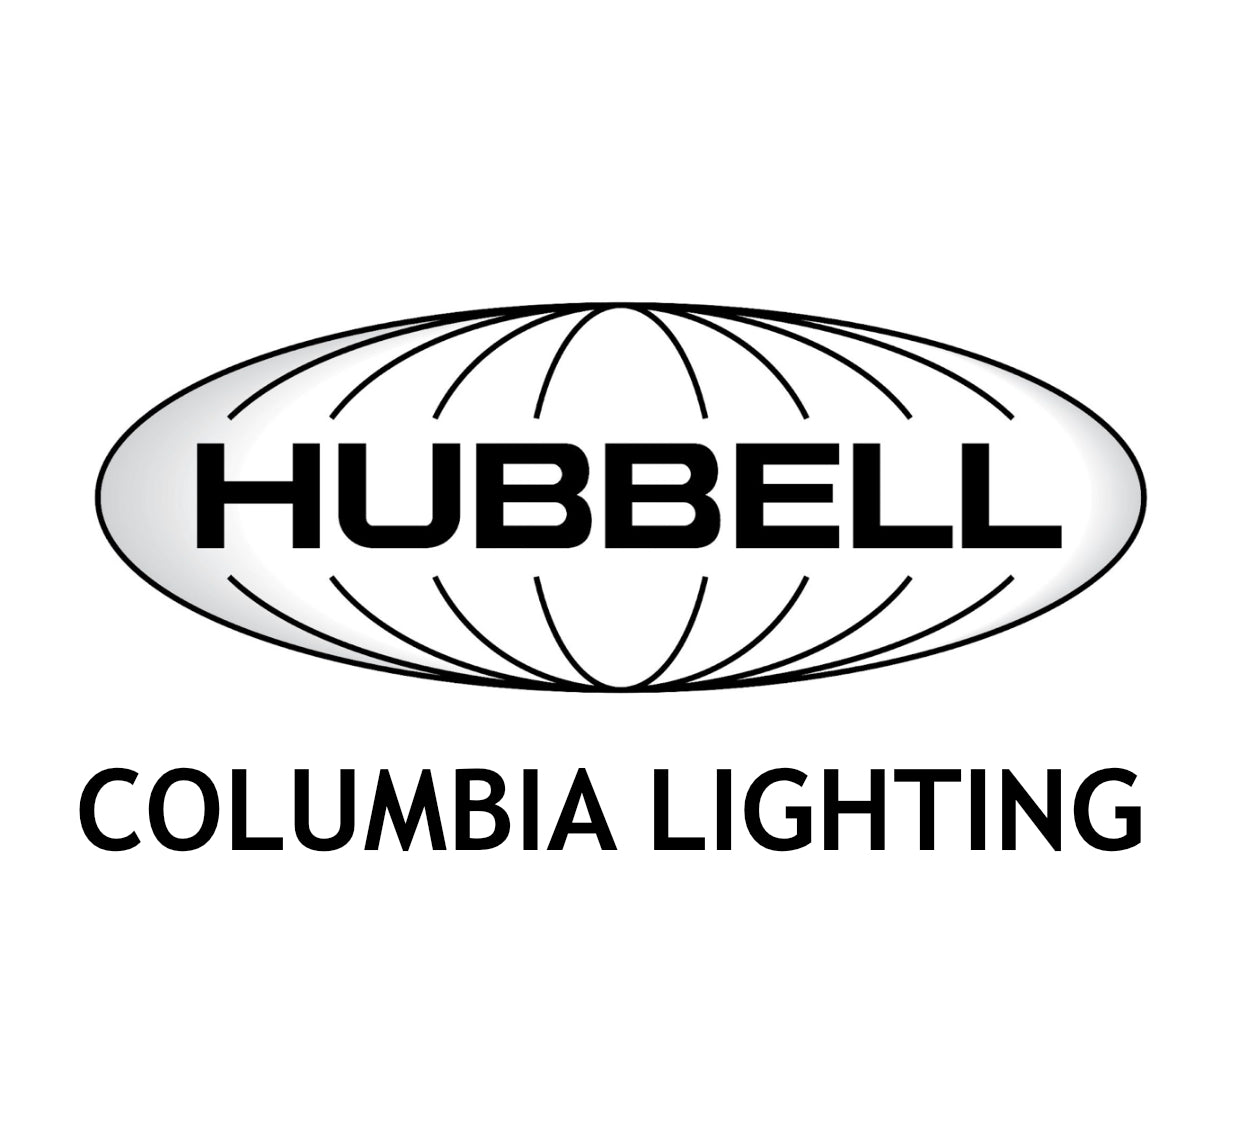 HUBBELL COLUMBIA LIGHTING